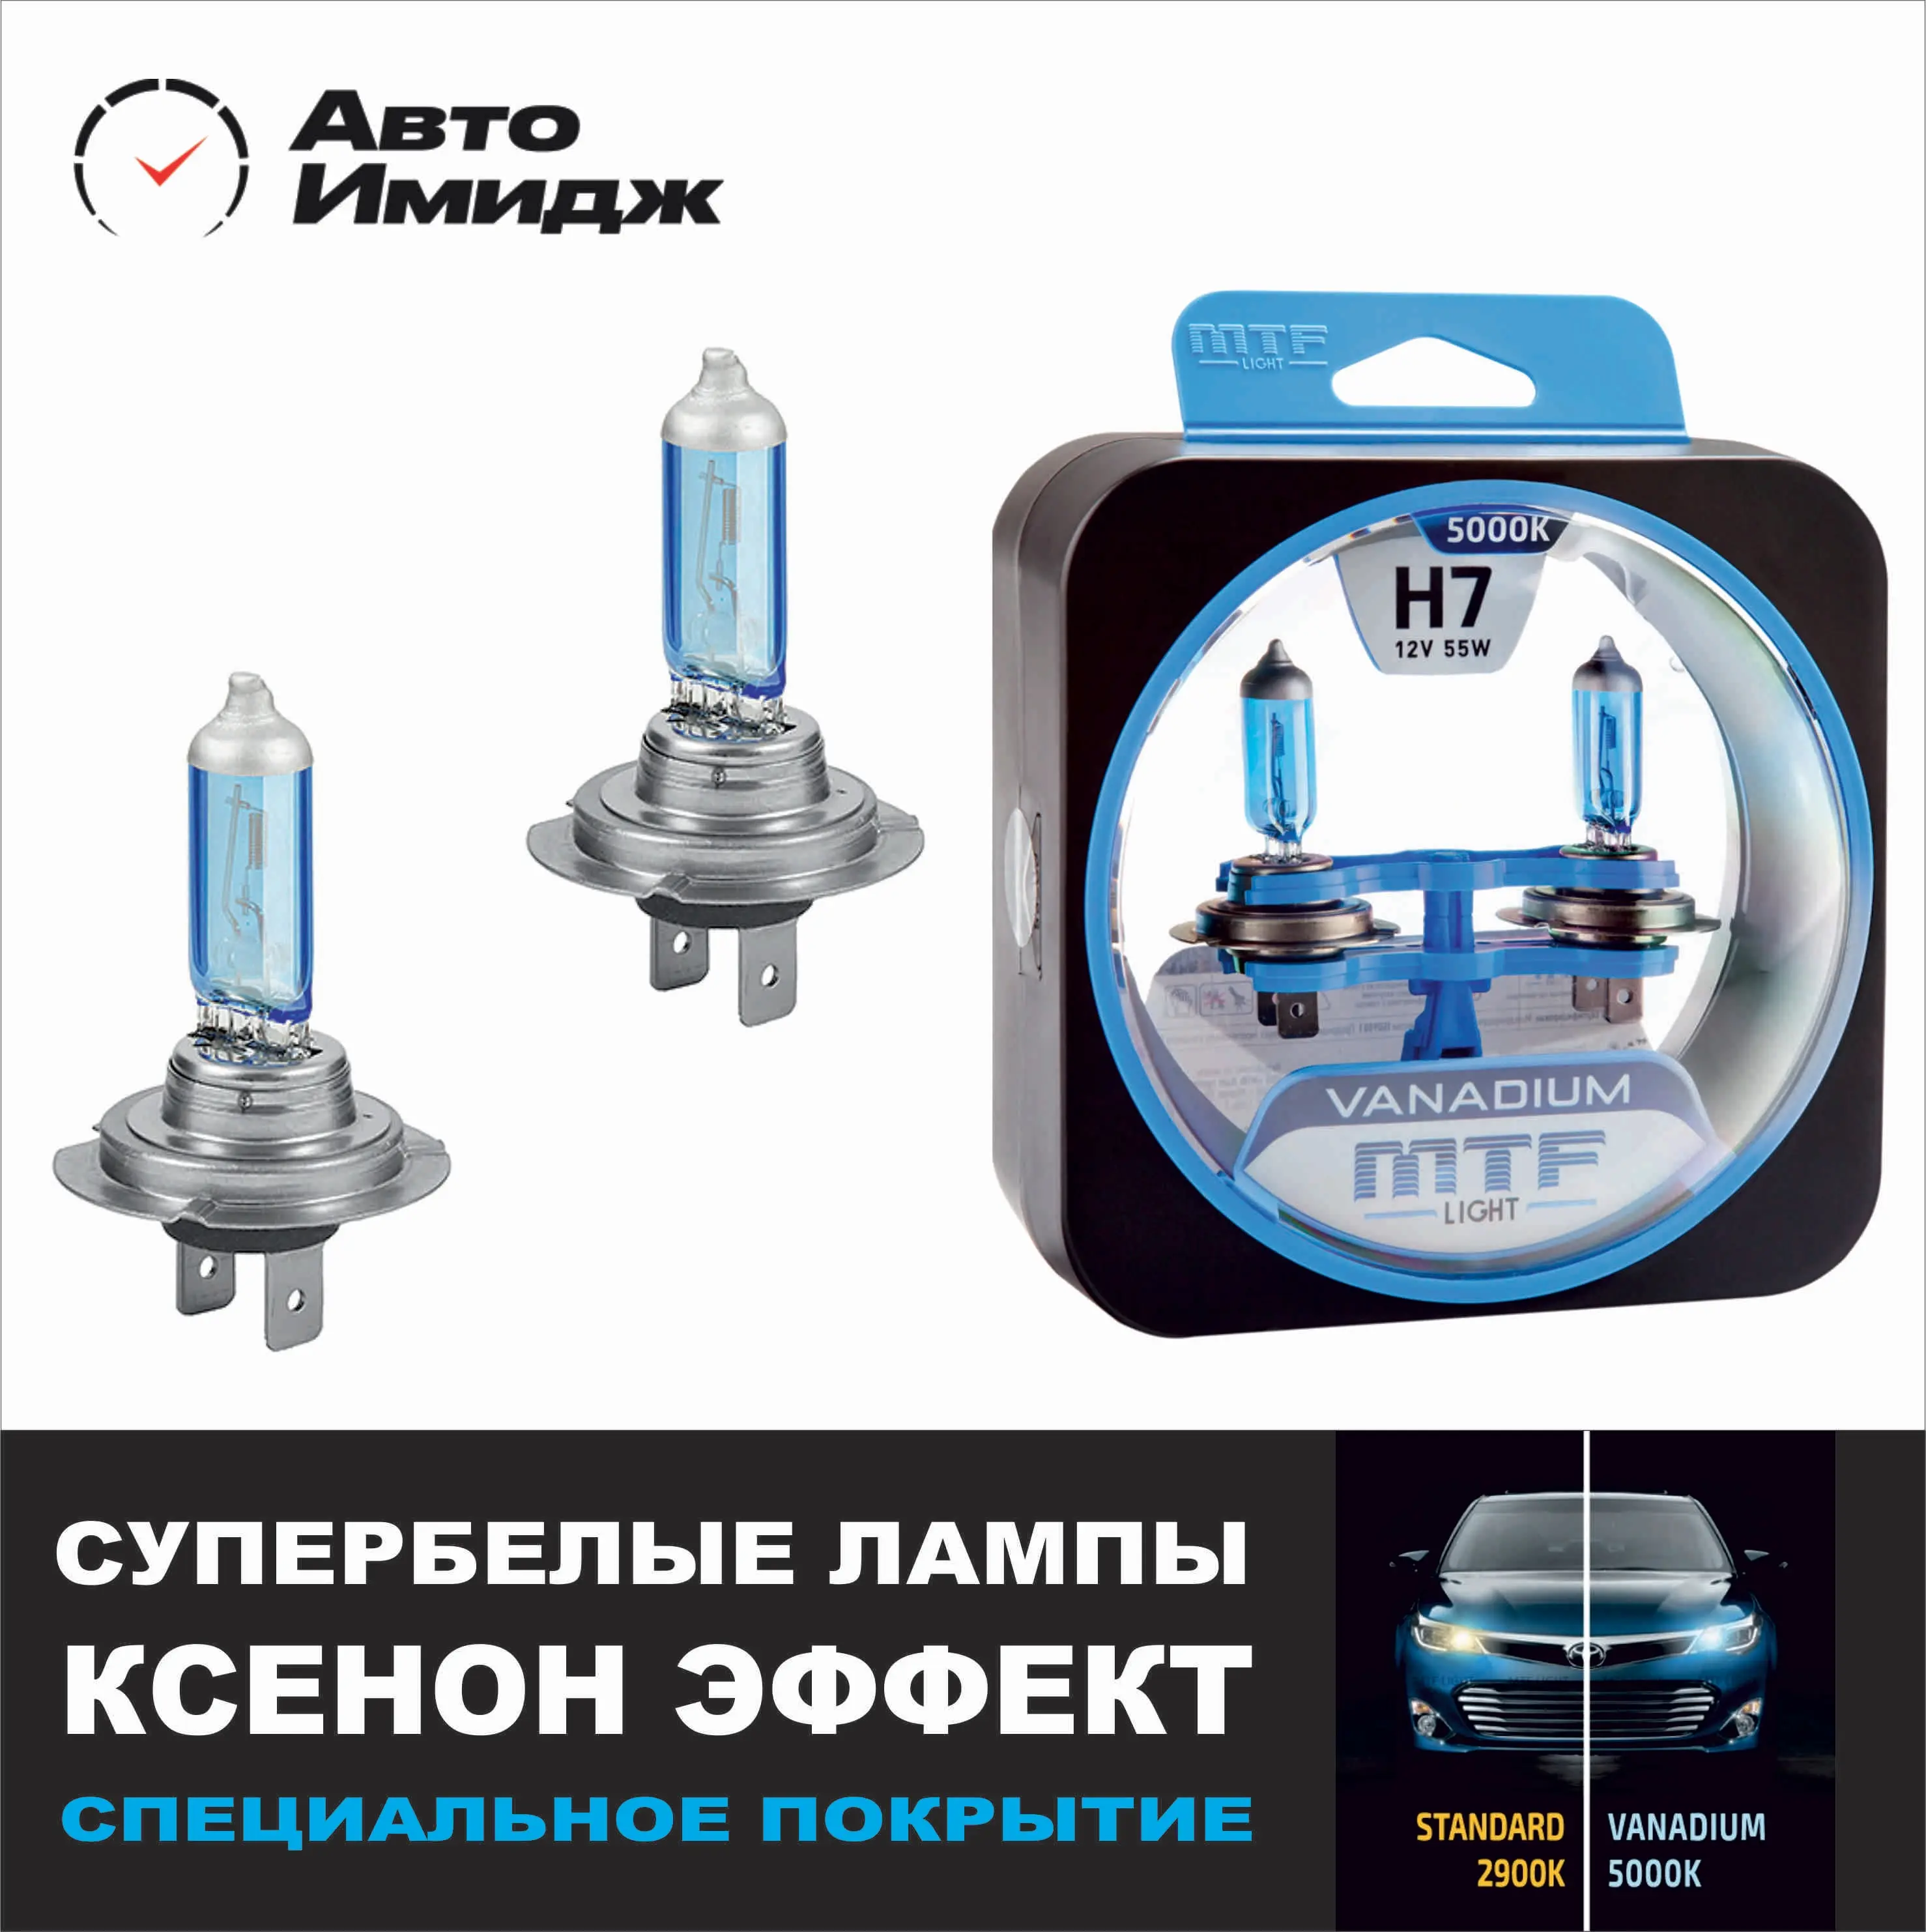 Галогеновые лампы эффект ксенона. Лампа h11 MTF Vanadium. Vanadium MTF Light 5000к. Галогеновые лампы h4 с эффектом ксенона. Галогенные лампы Ванадиум 5000к.